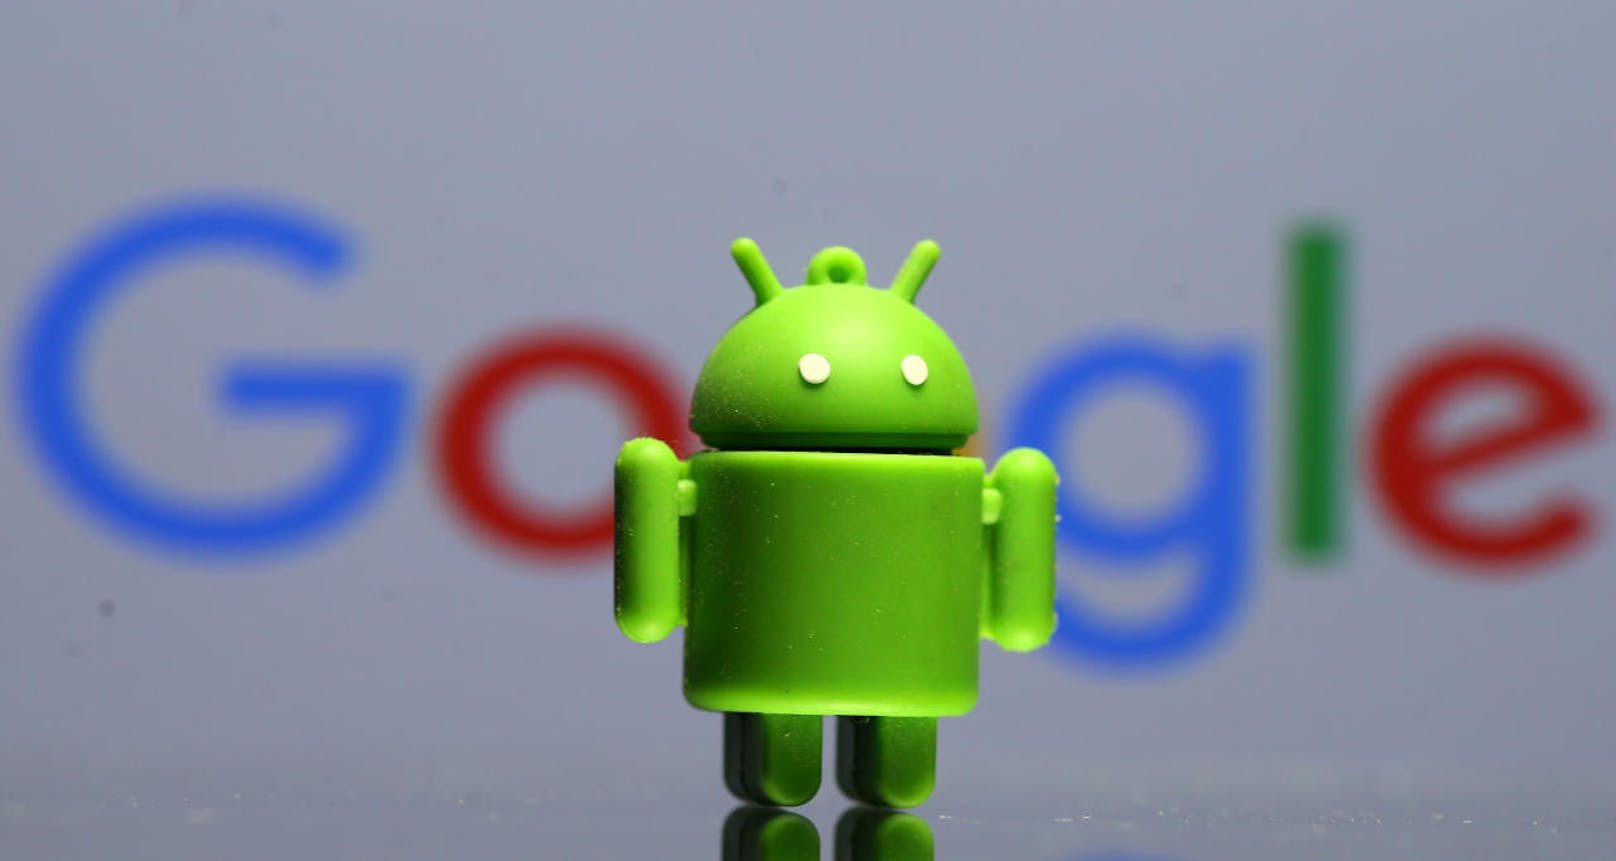 Rekordstrafe: Google wird wegen seinem Android-System mit 4,3 Milliarden Euro bestraft.